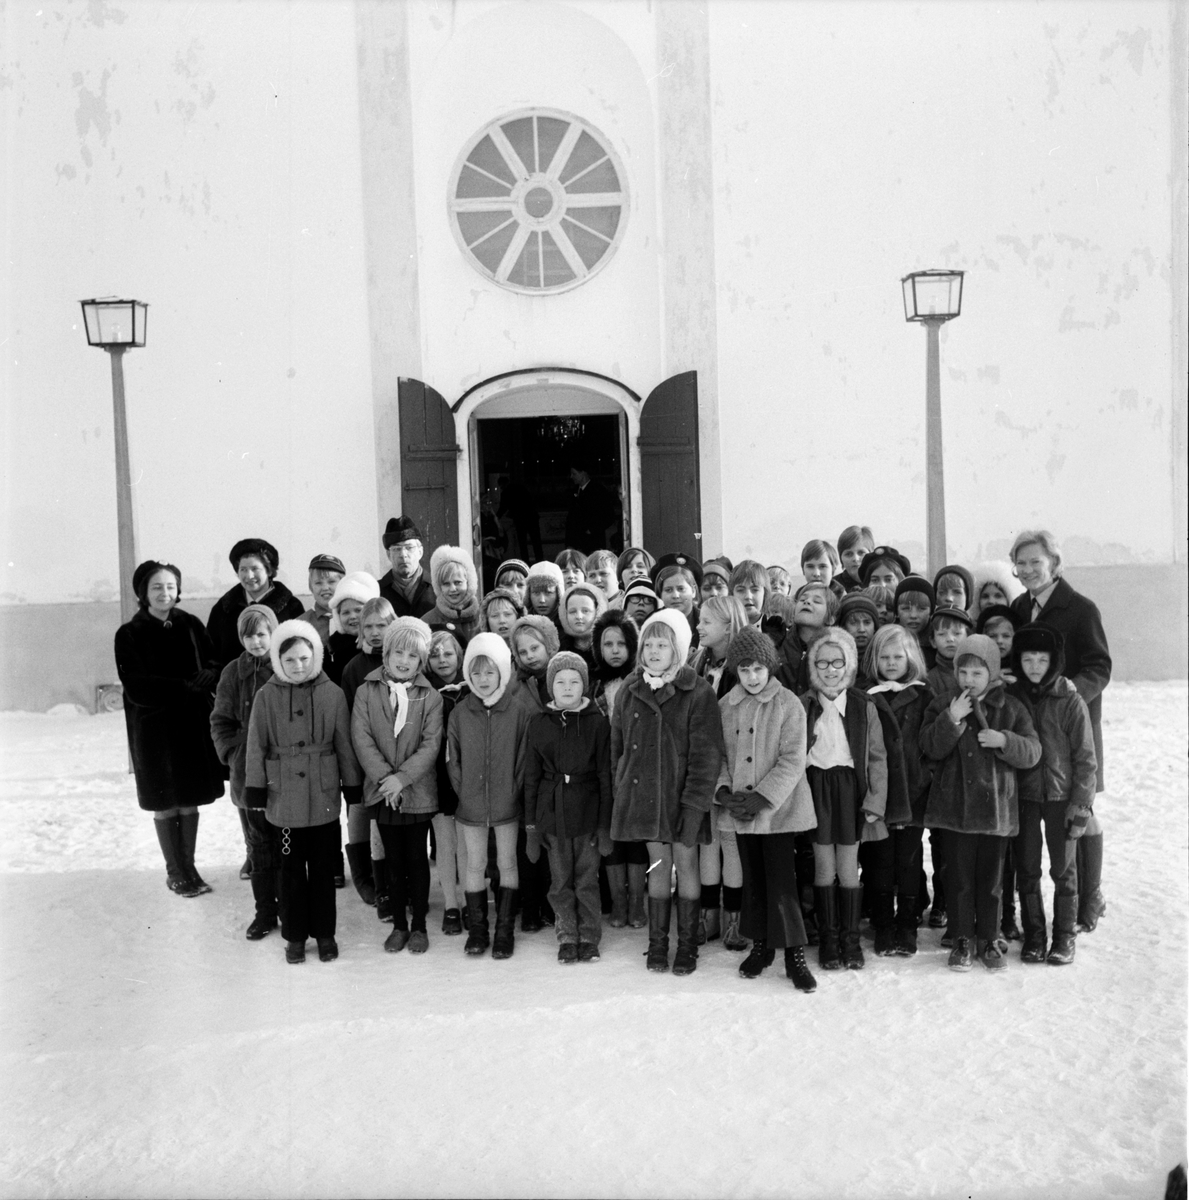 Undersvik,
Stiftsgården,
Feb 1970